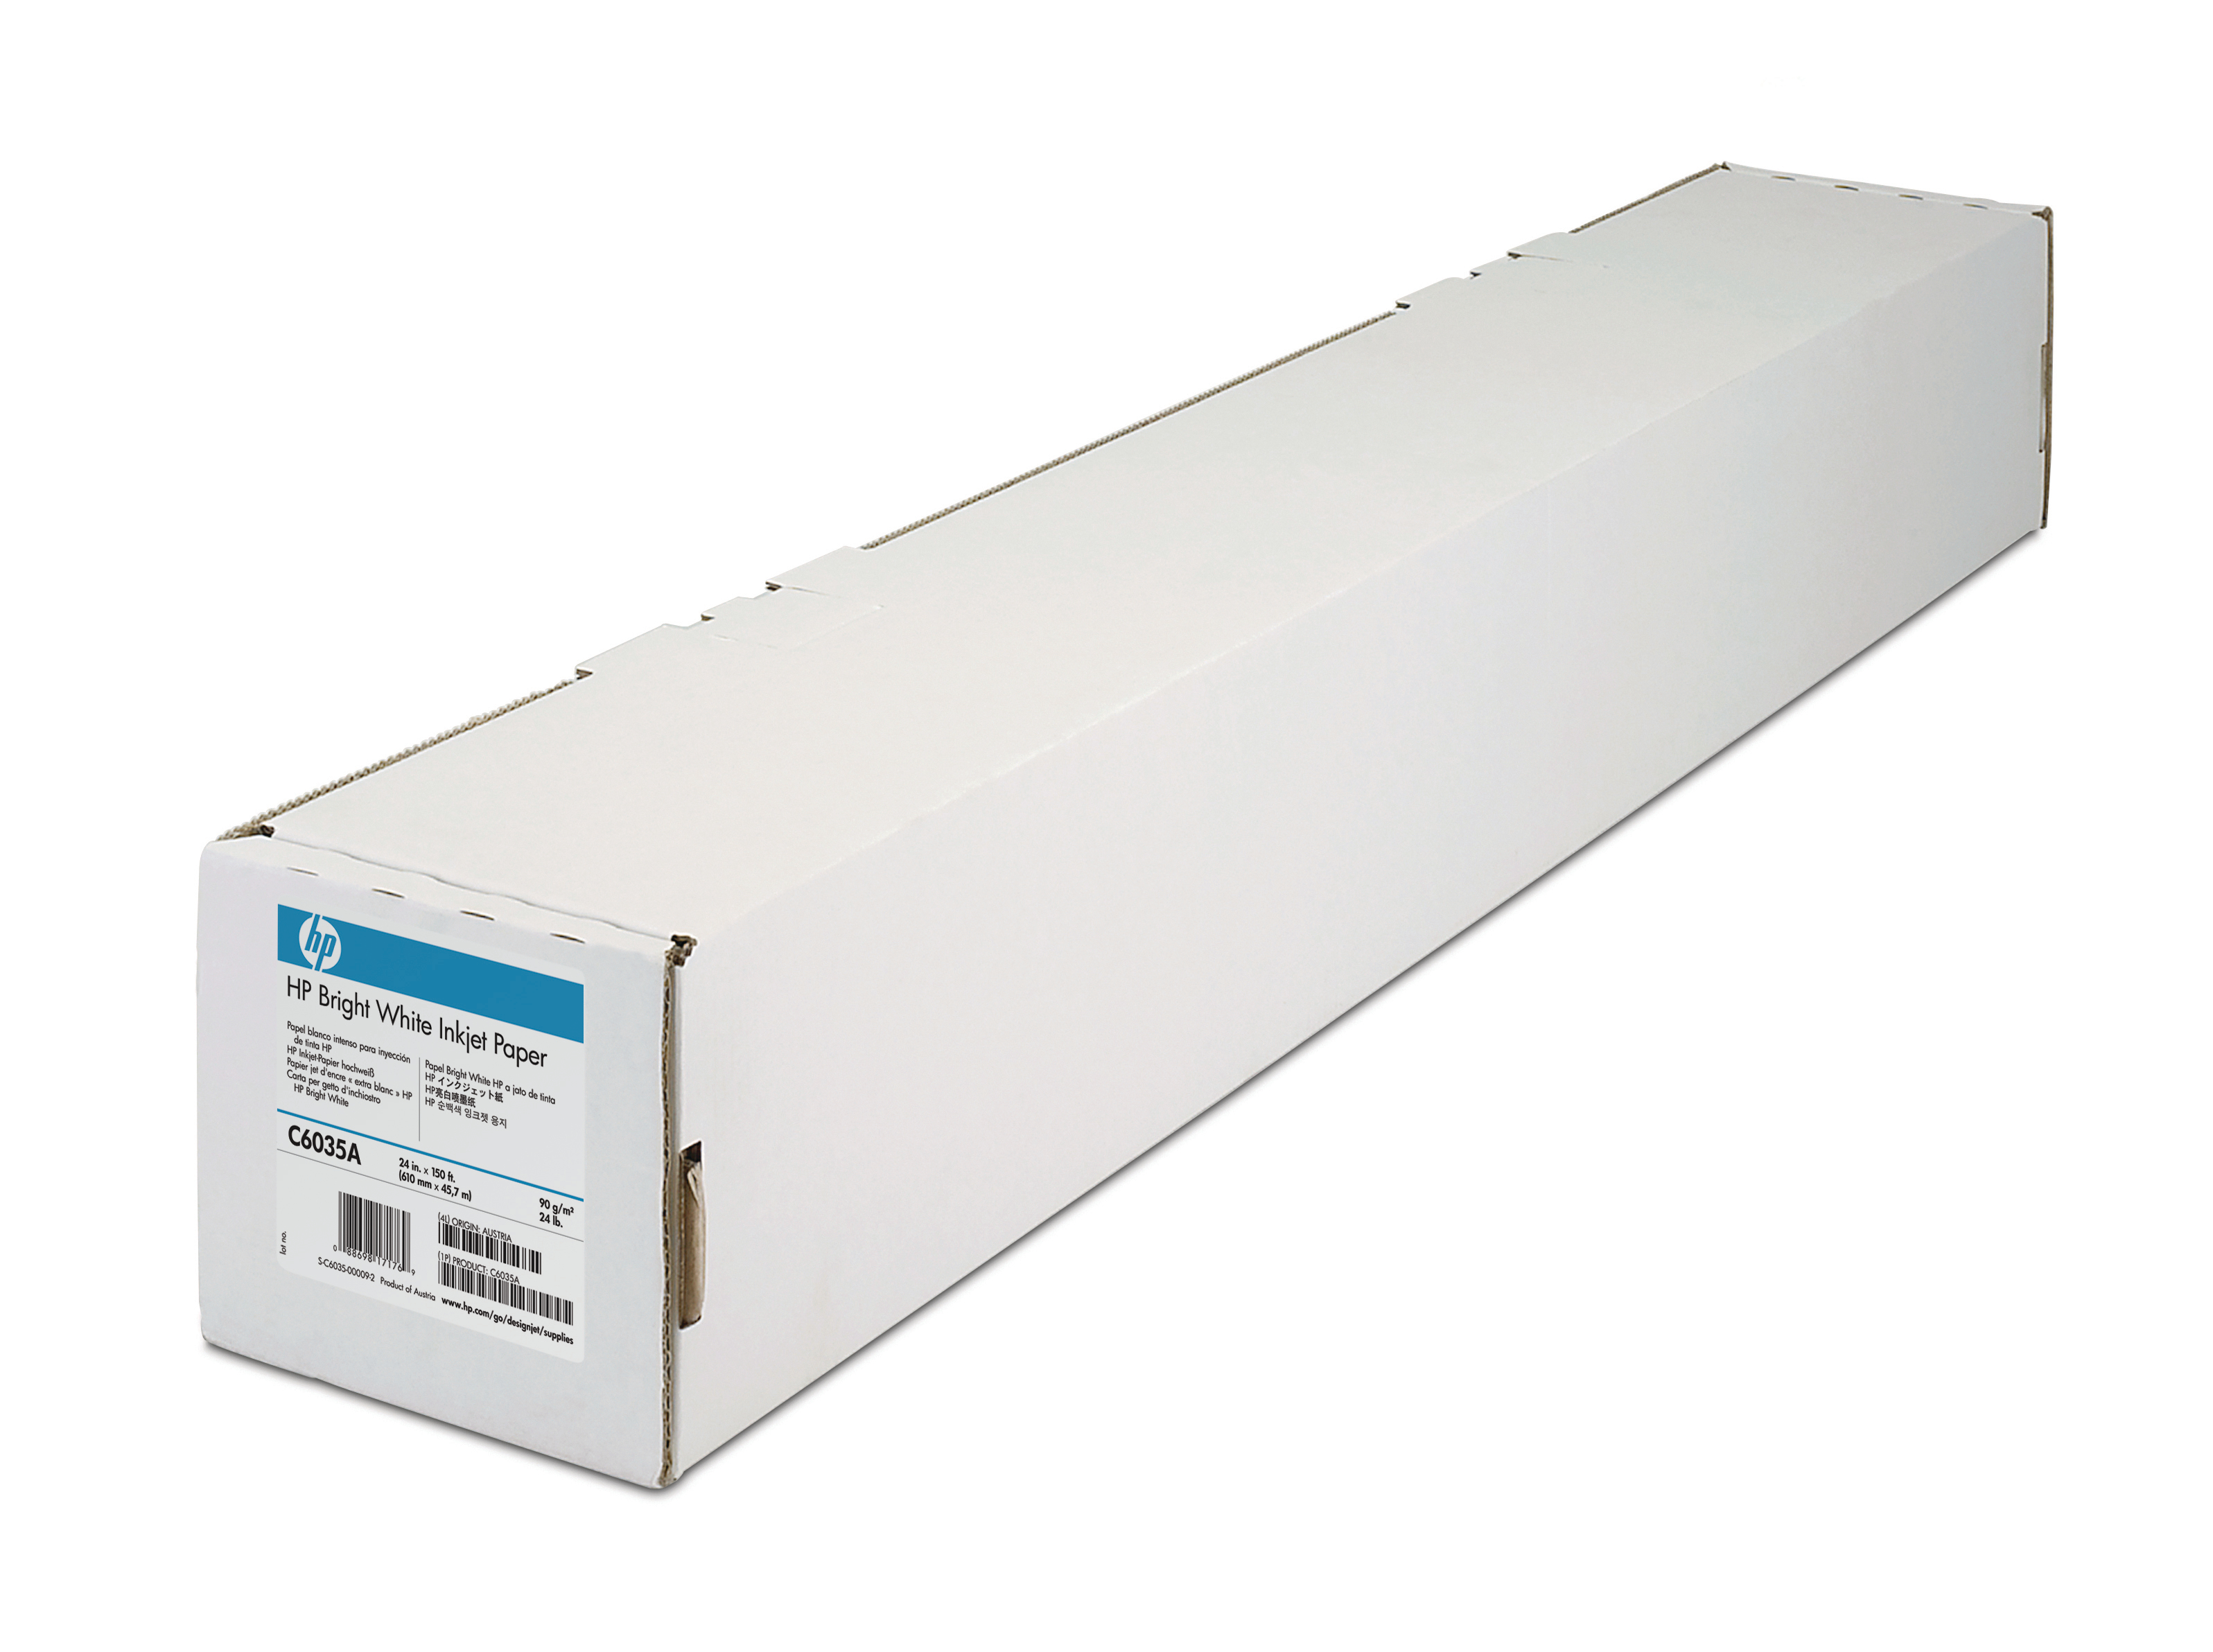 HP Bright White Paper 90g 45m C6035A DesignJet 650C 24 pouces